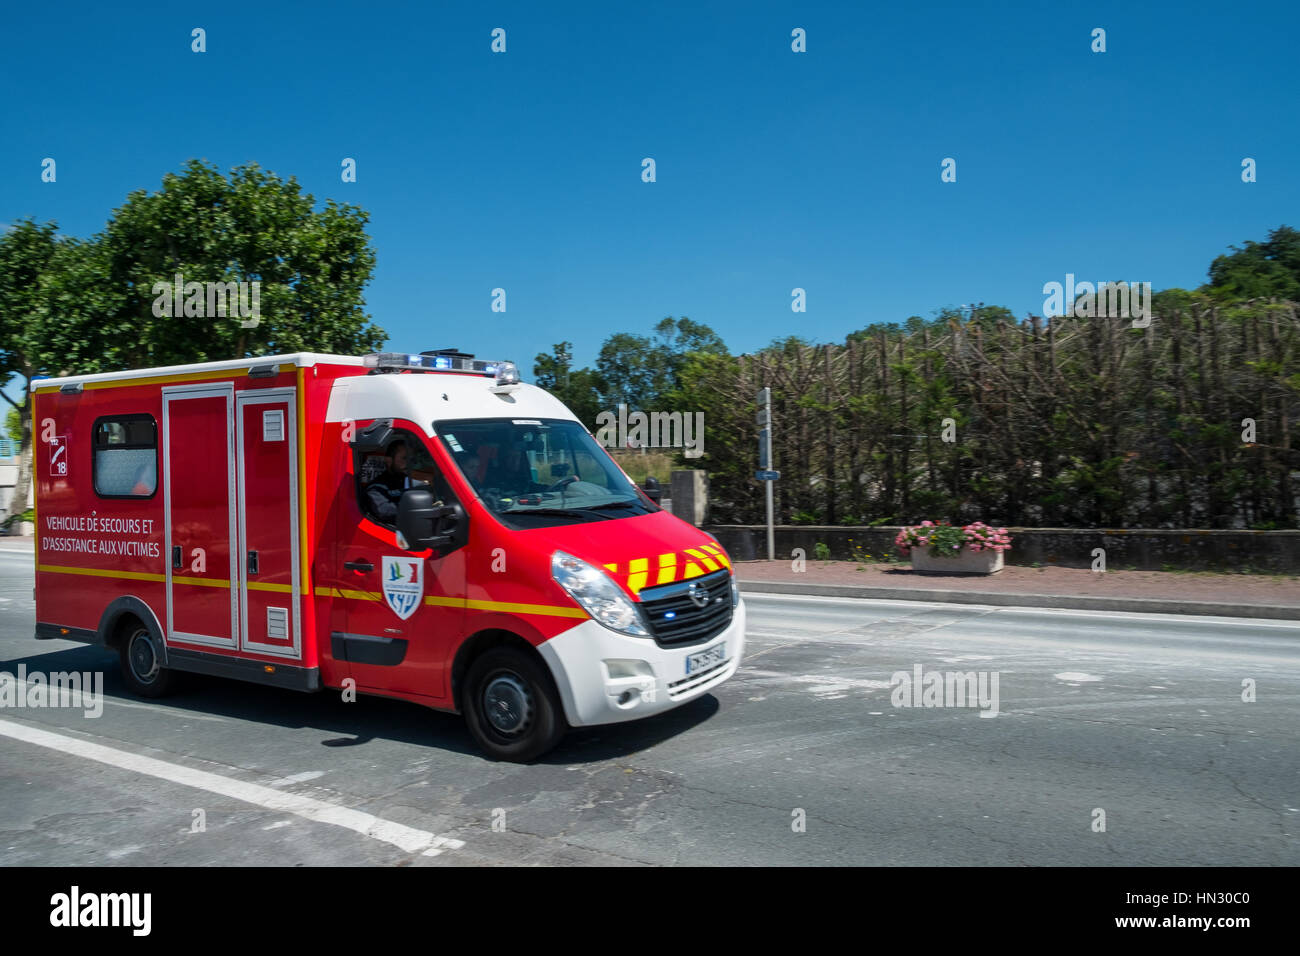 ambulance Stock Photo